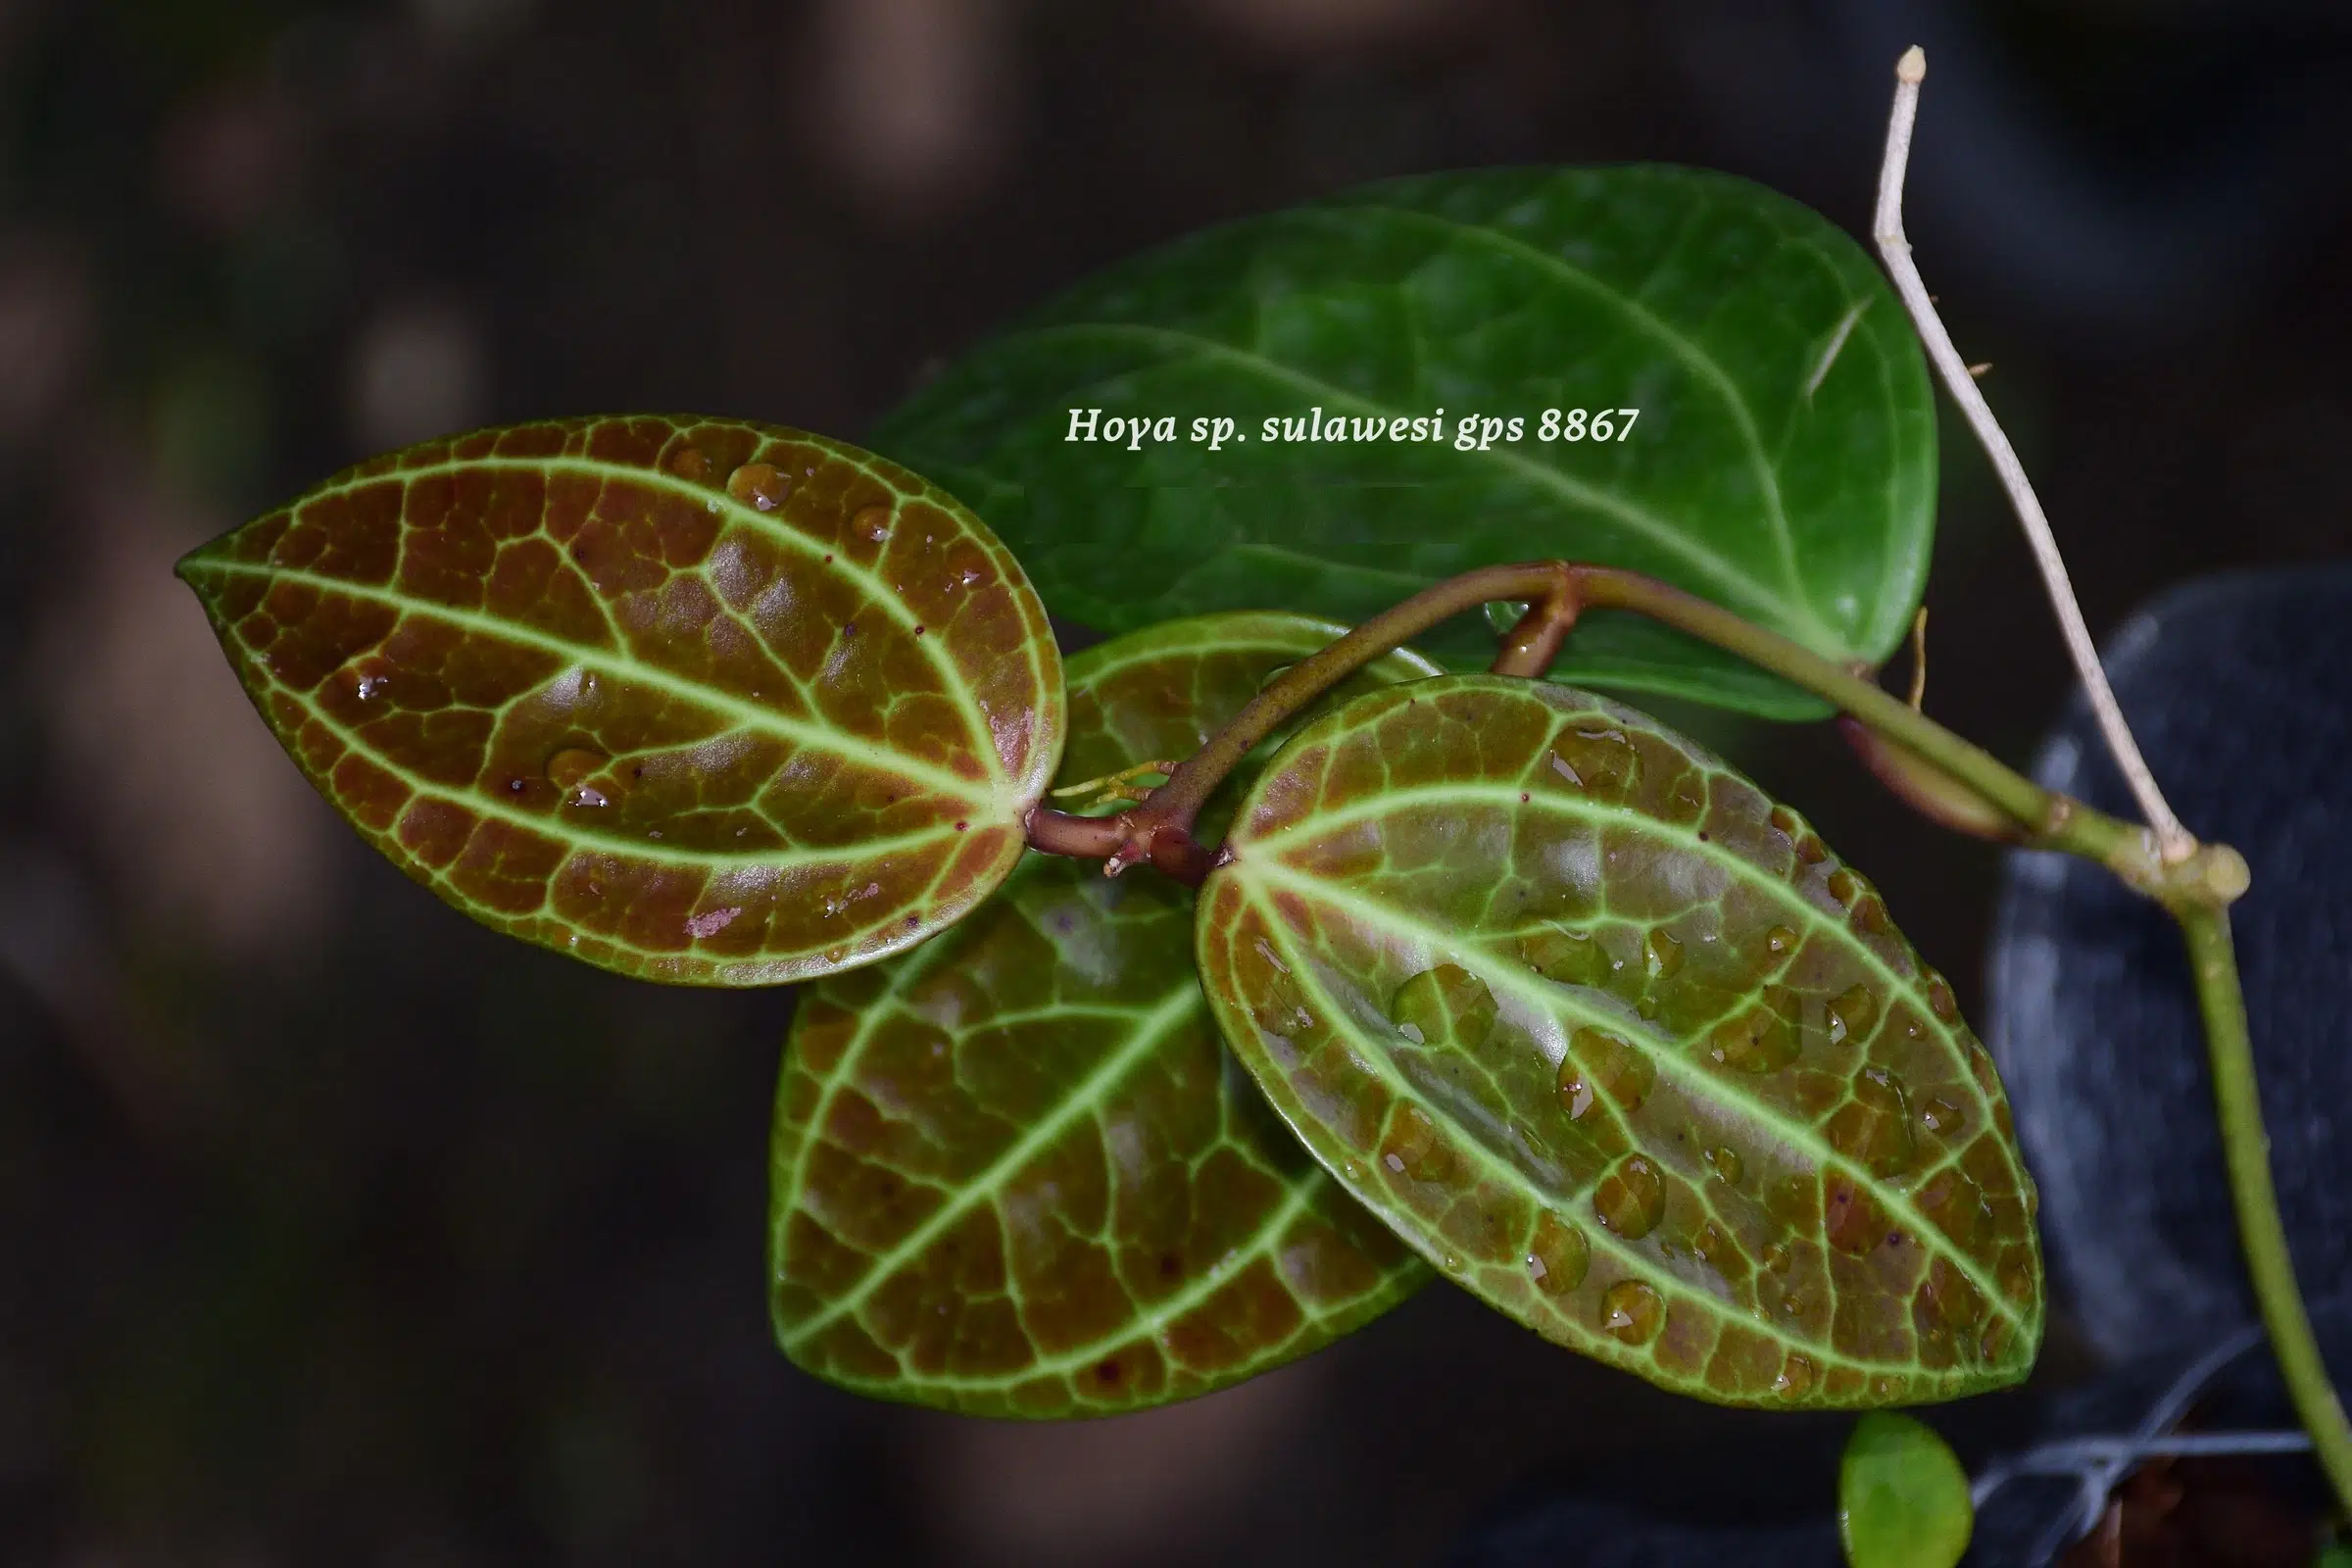 Hoya sp. 'Sulawesii gps' foliage